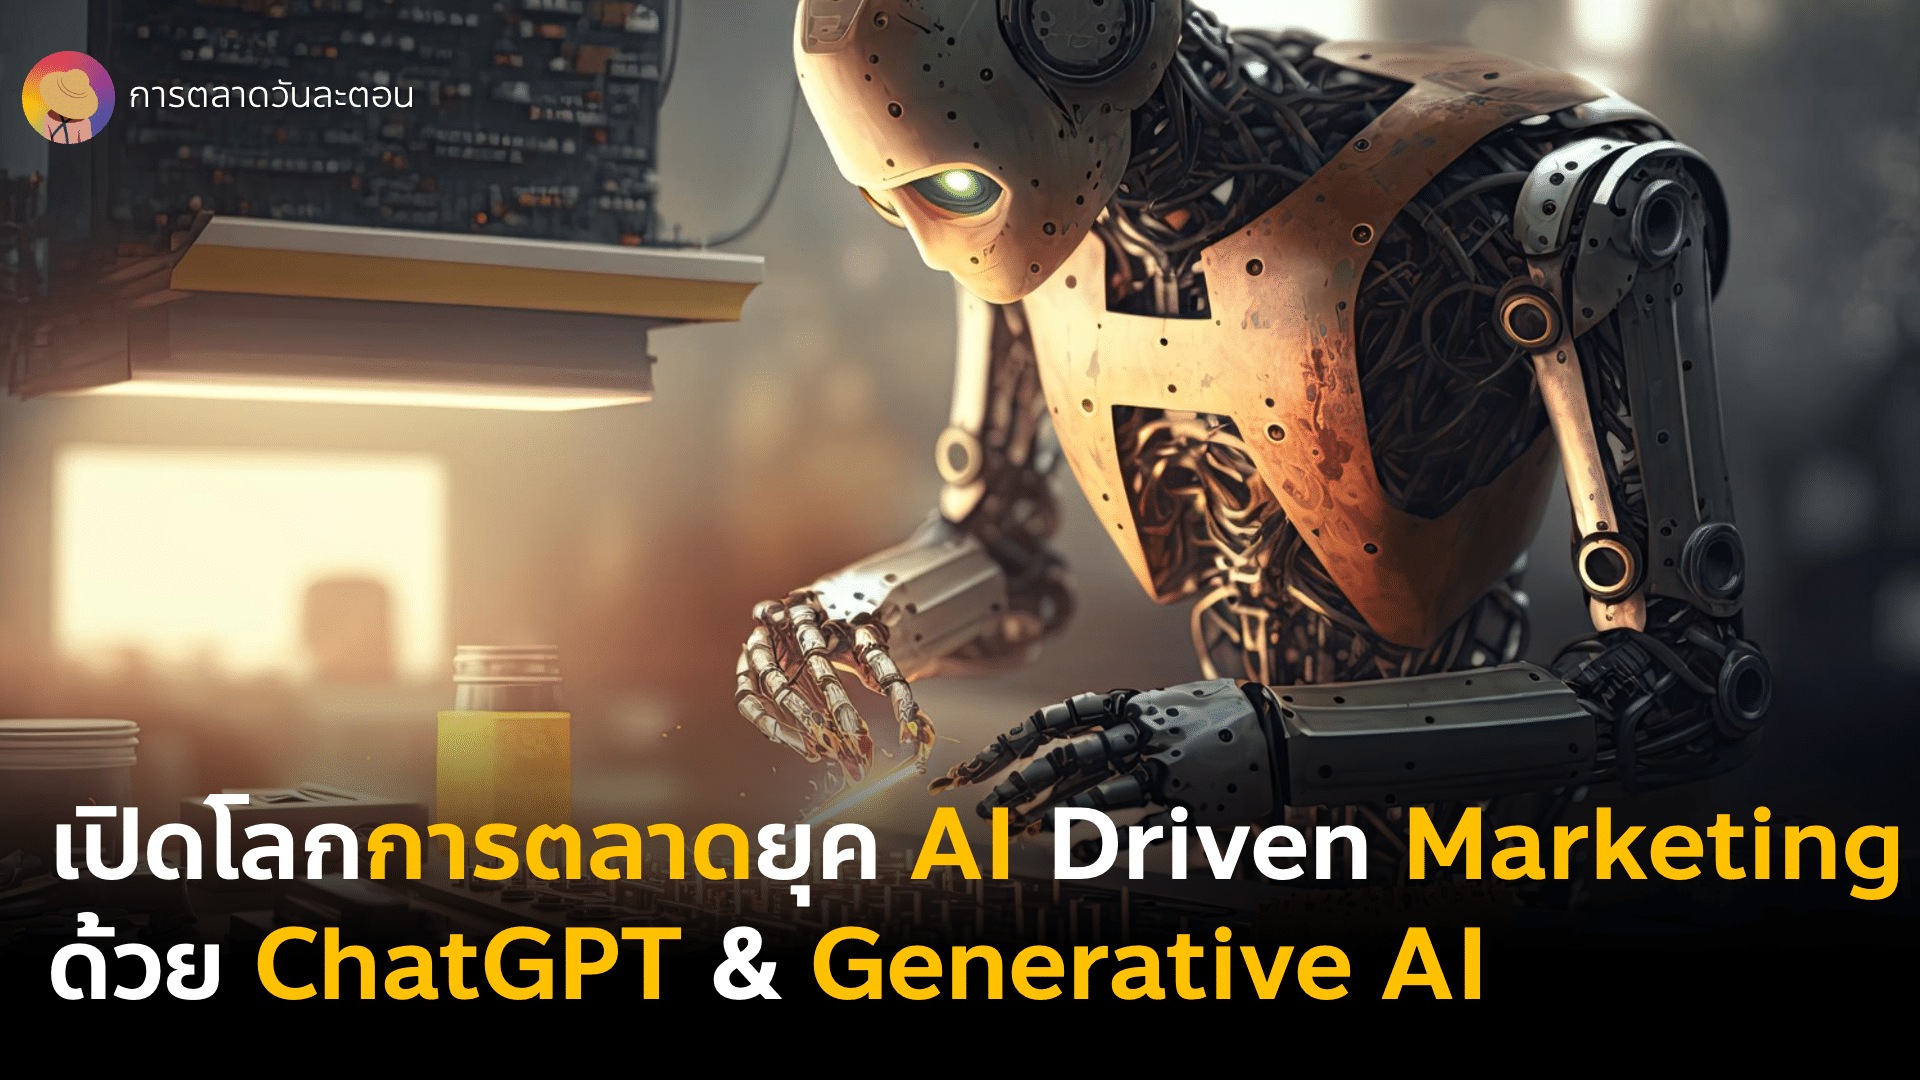 เปิดโลกการตลาดยุค AI Driven Marketing ด้วย ChatGPT และ Generative AI